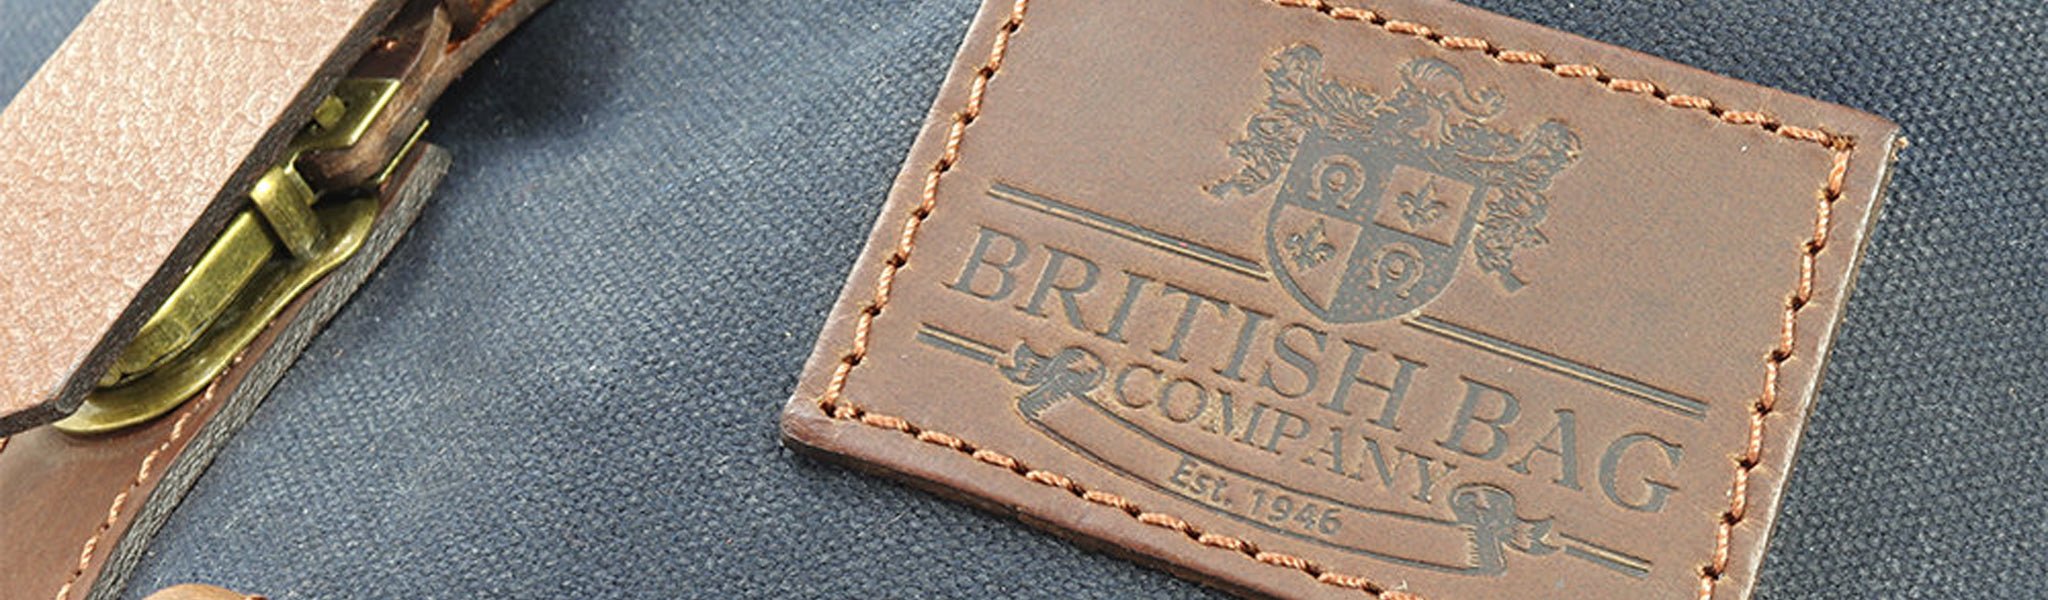 The British Bag Company - 4elementsclothing